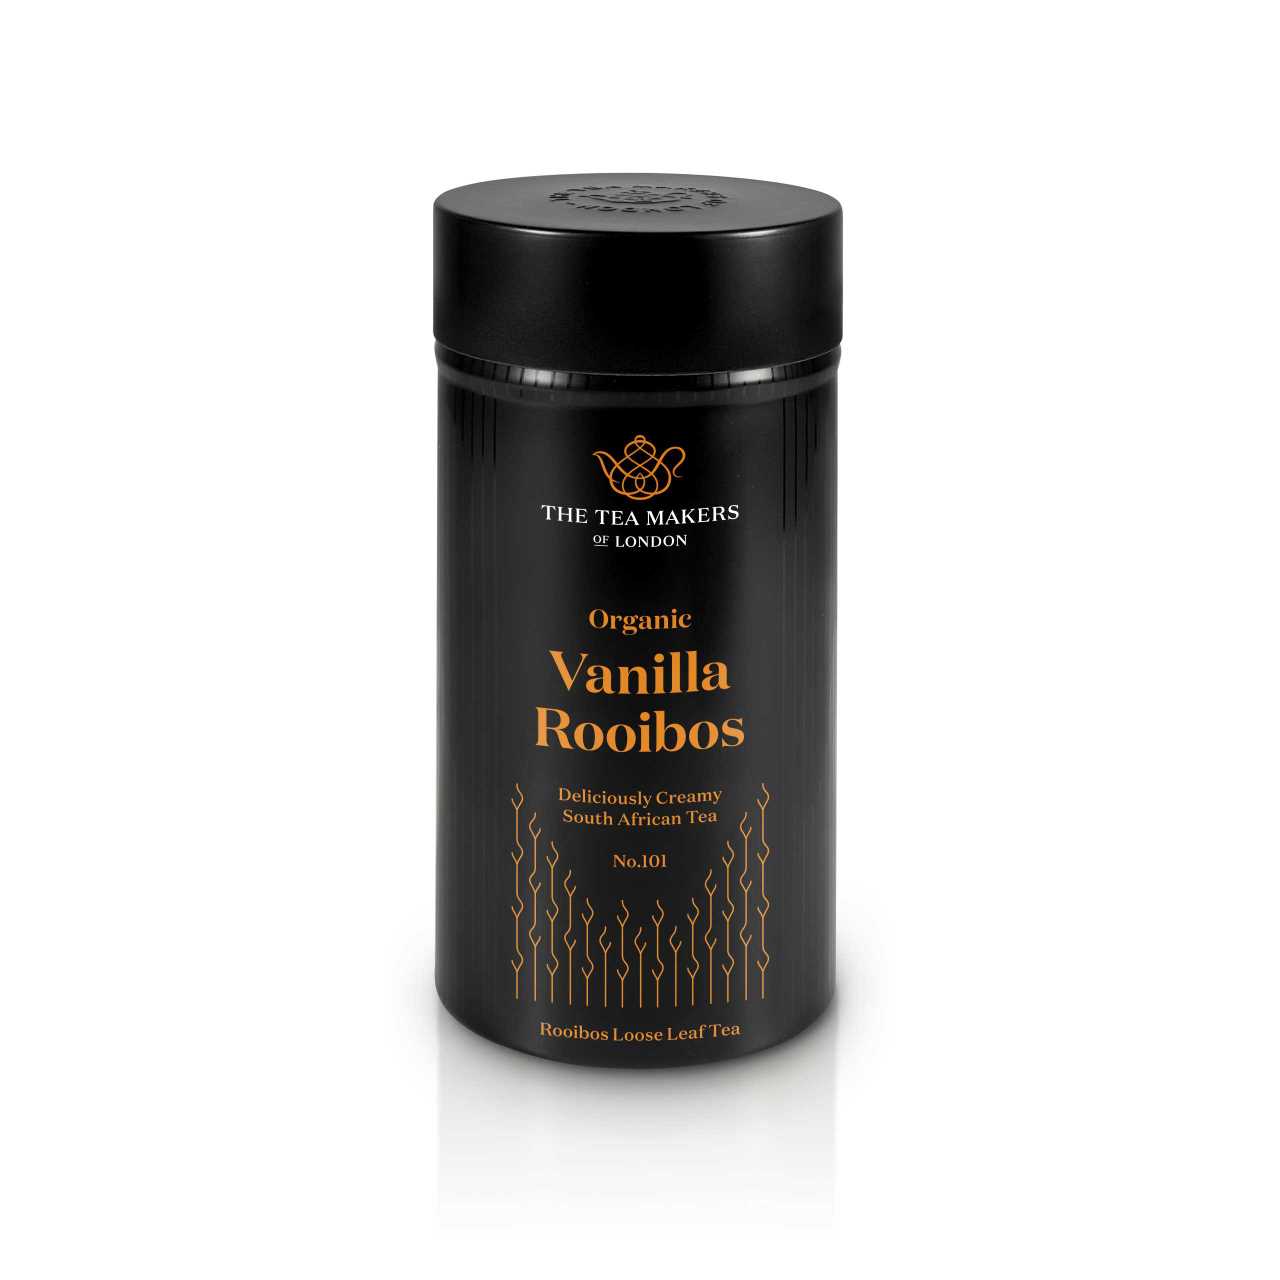 Organic Vanilla Rooibos Loose Leaf Tea Caddy